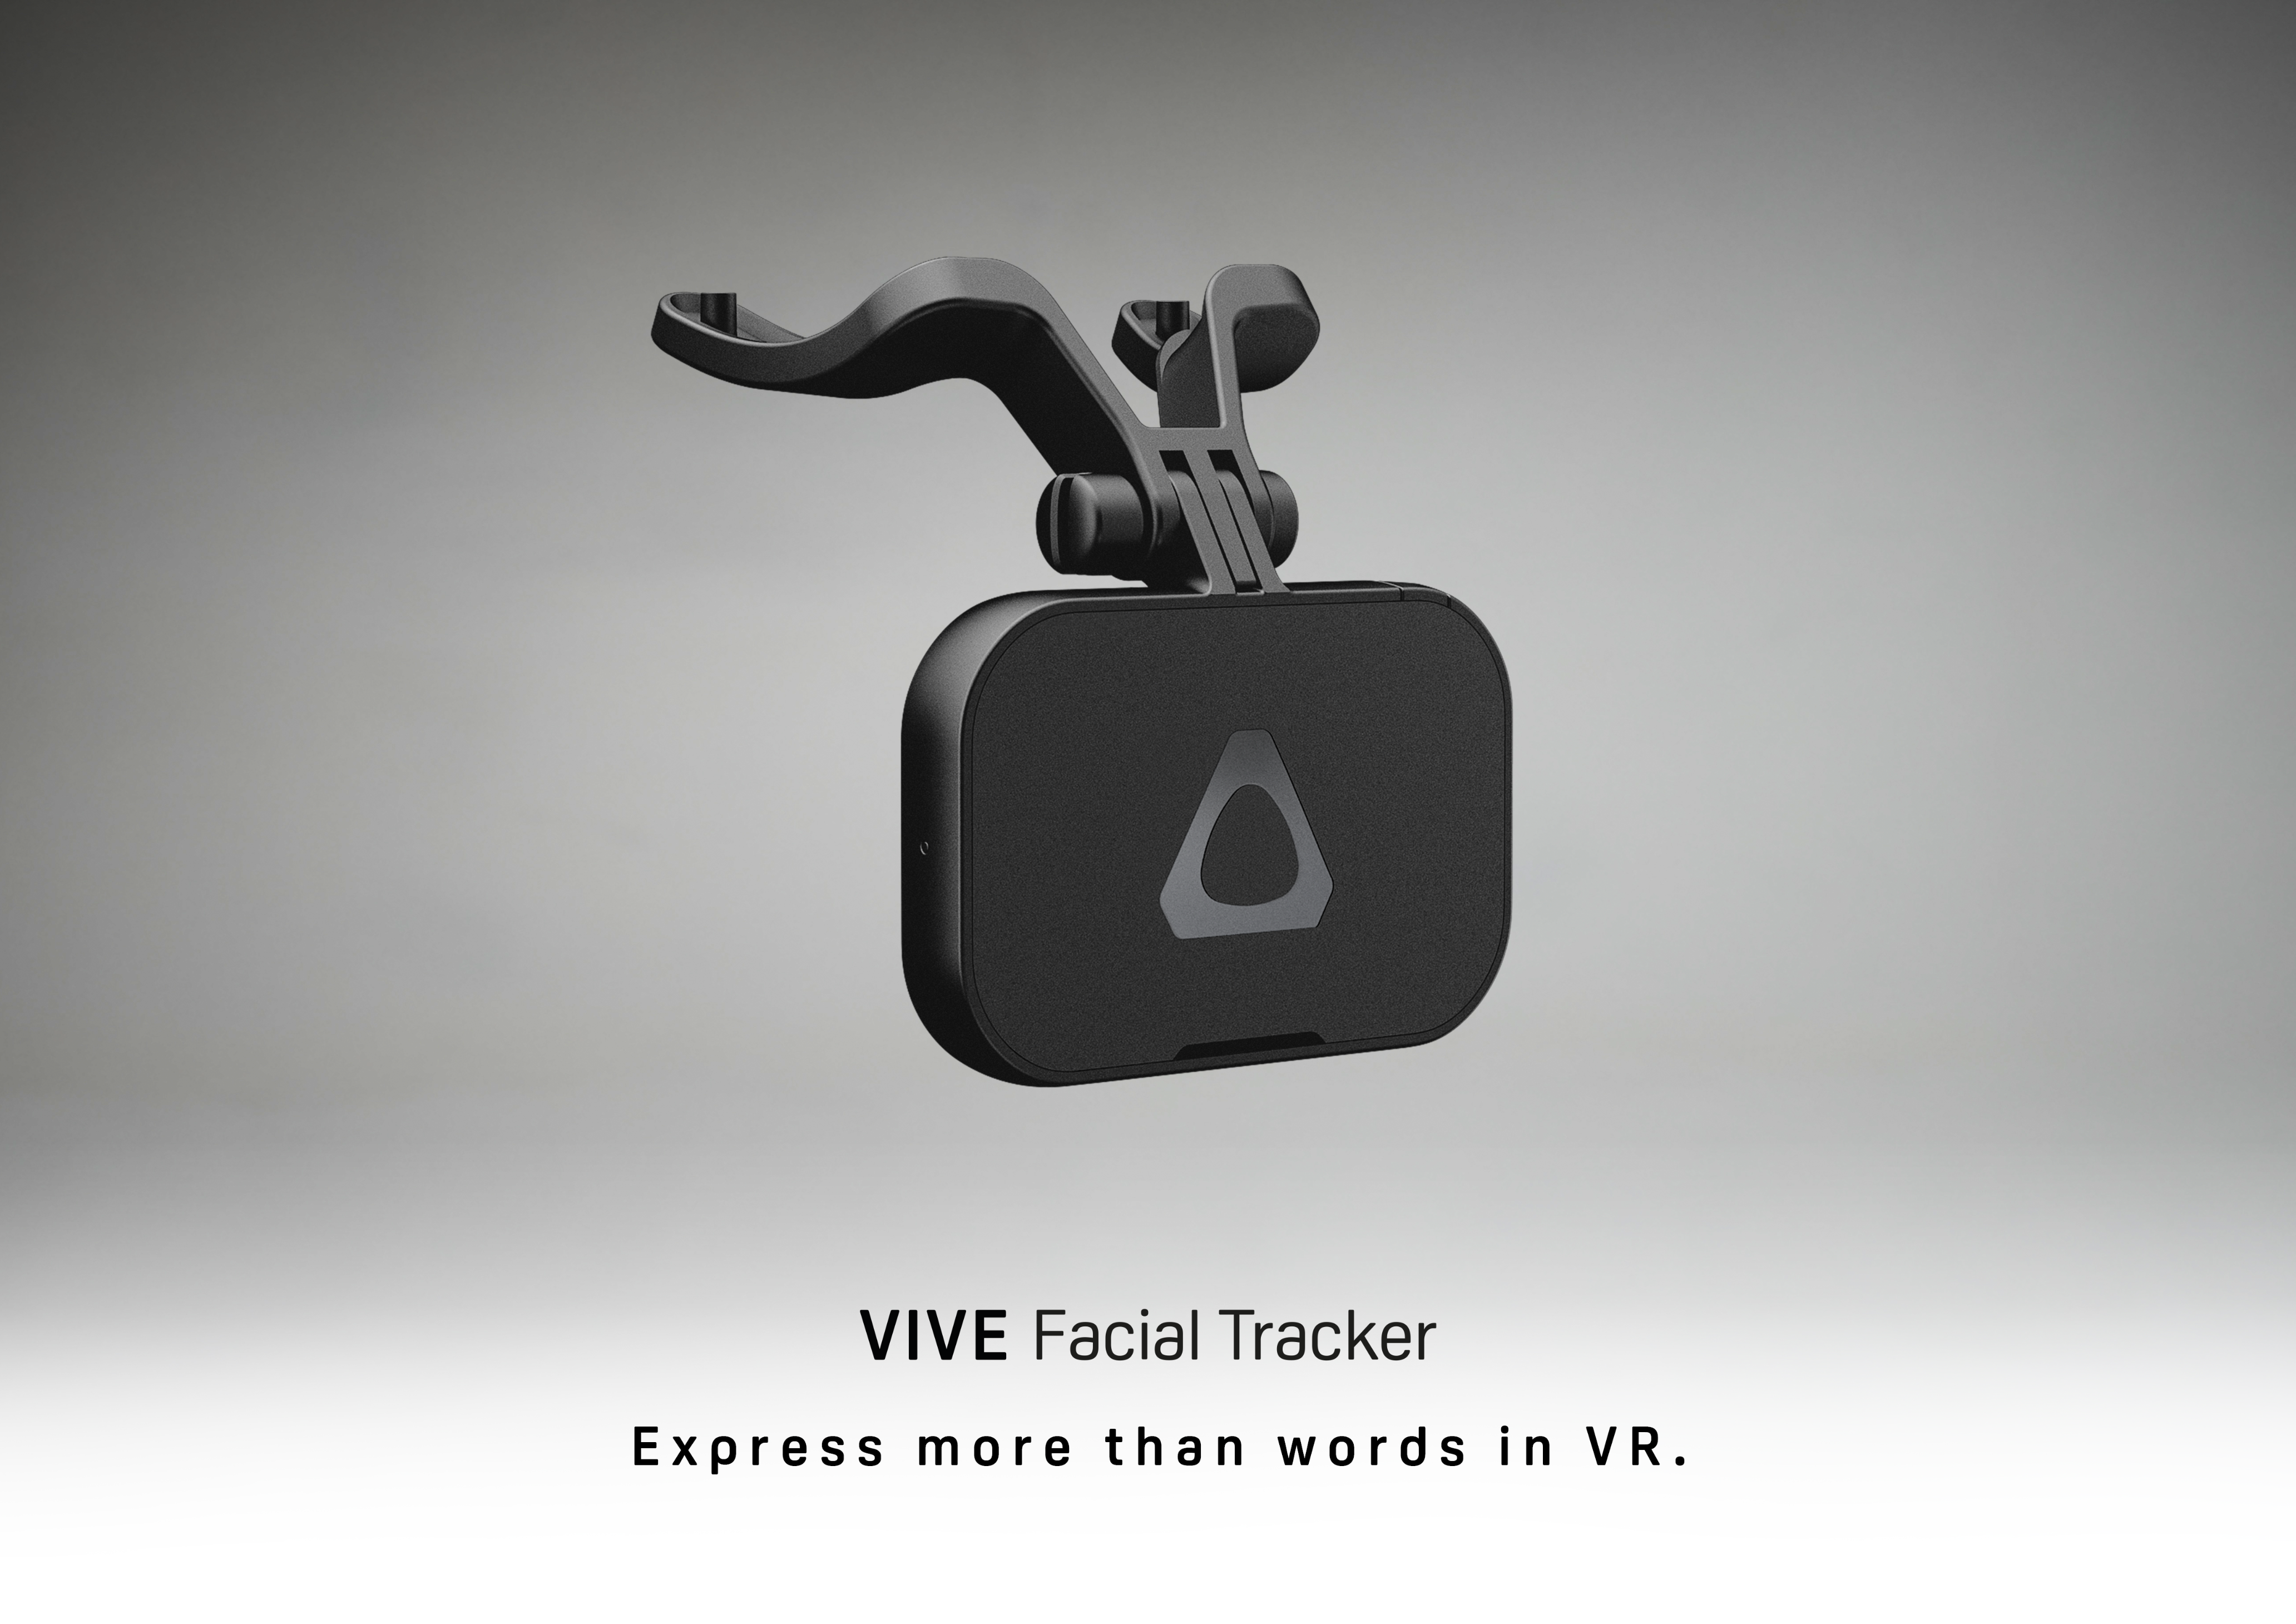 VIVE Facial Tracker